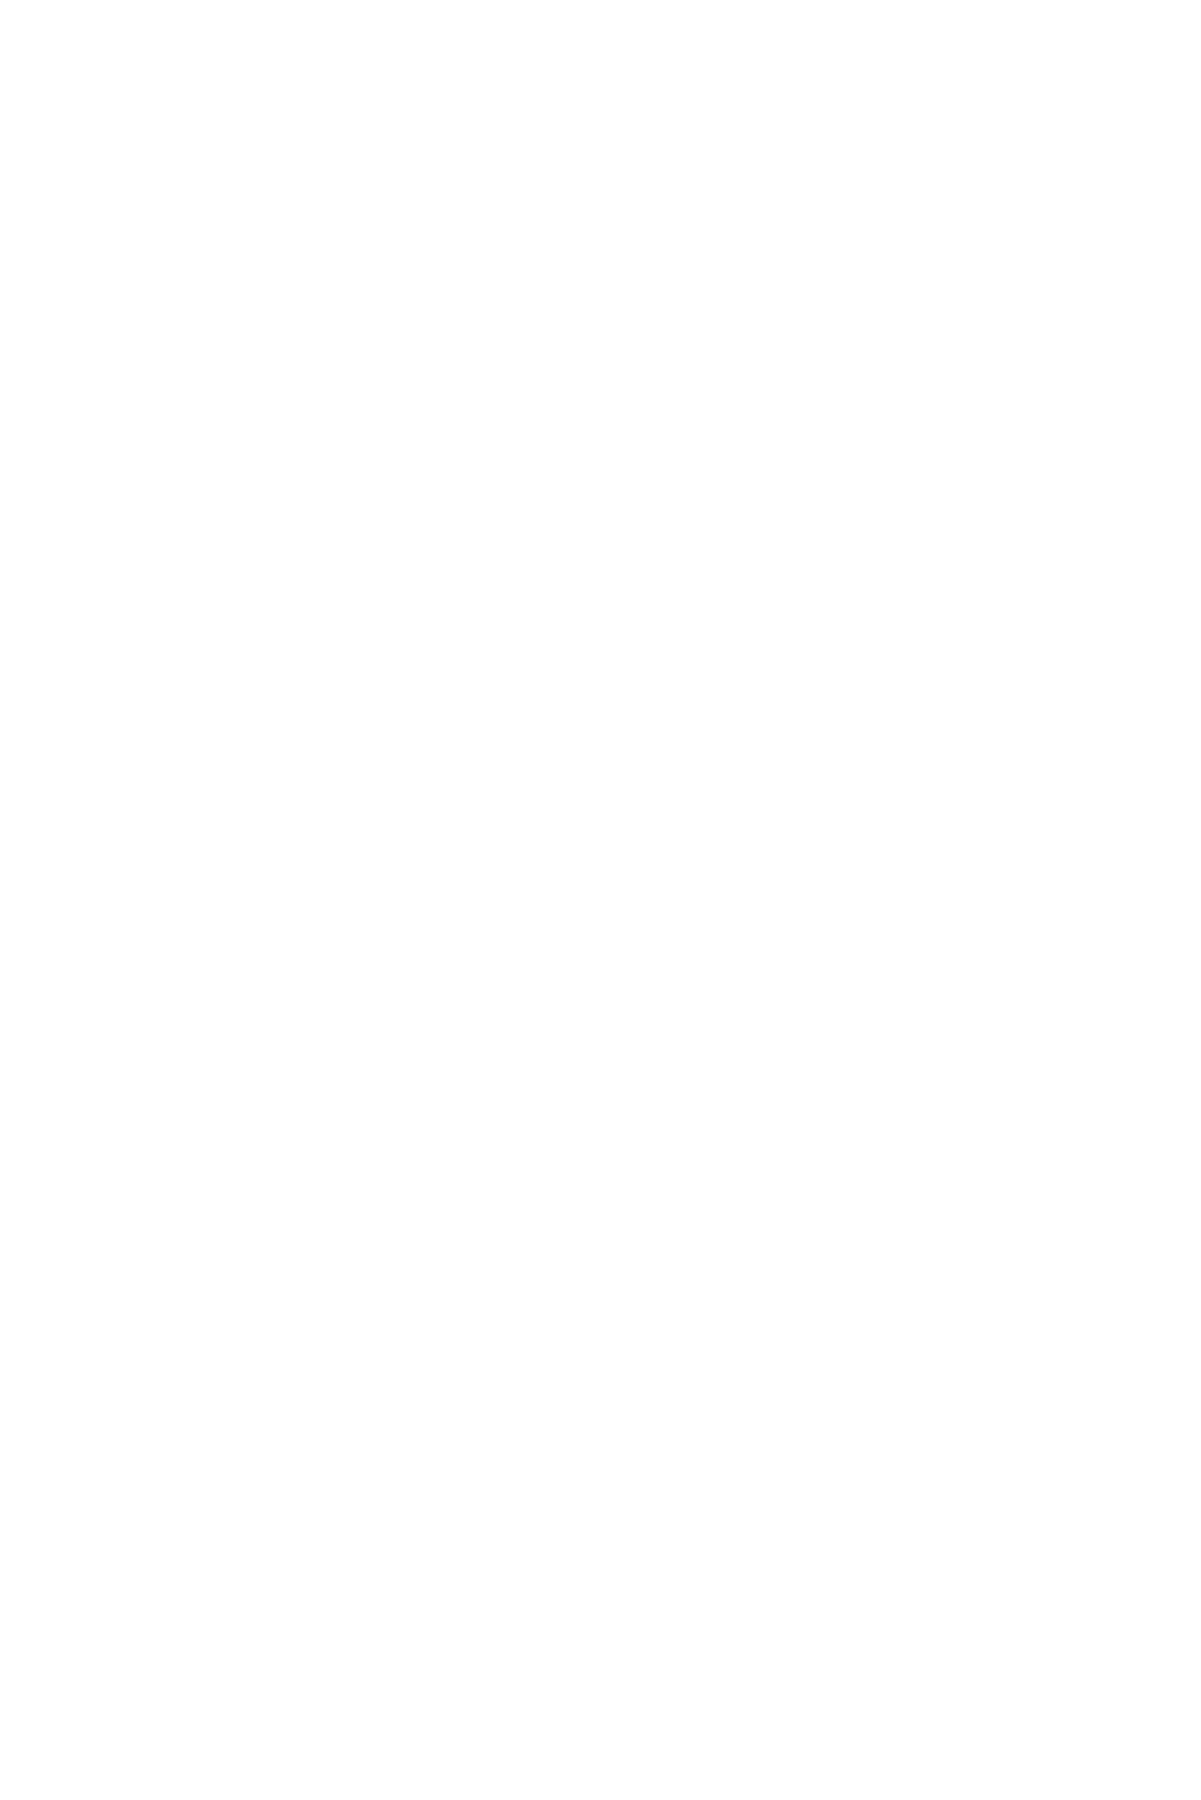 Штормит, серия 'Байкал осенью' | мыс Лаканда, губа Аяя, Фролихинский заказник, Бурятия | фотограф Марина Огнева